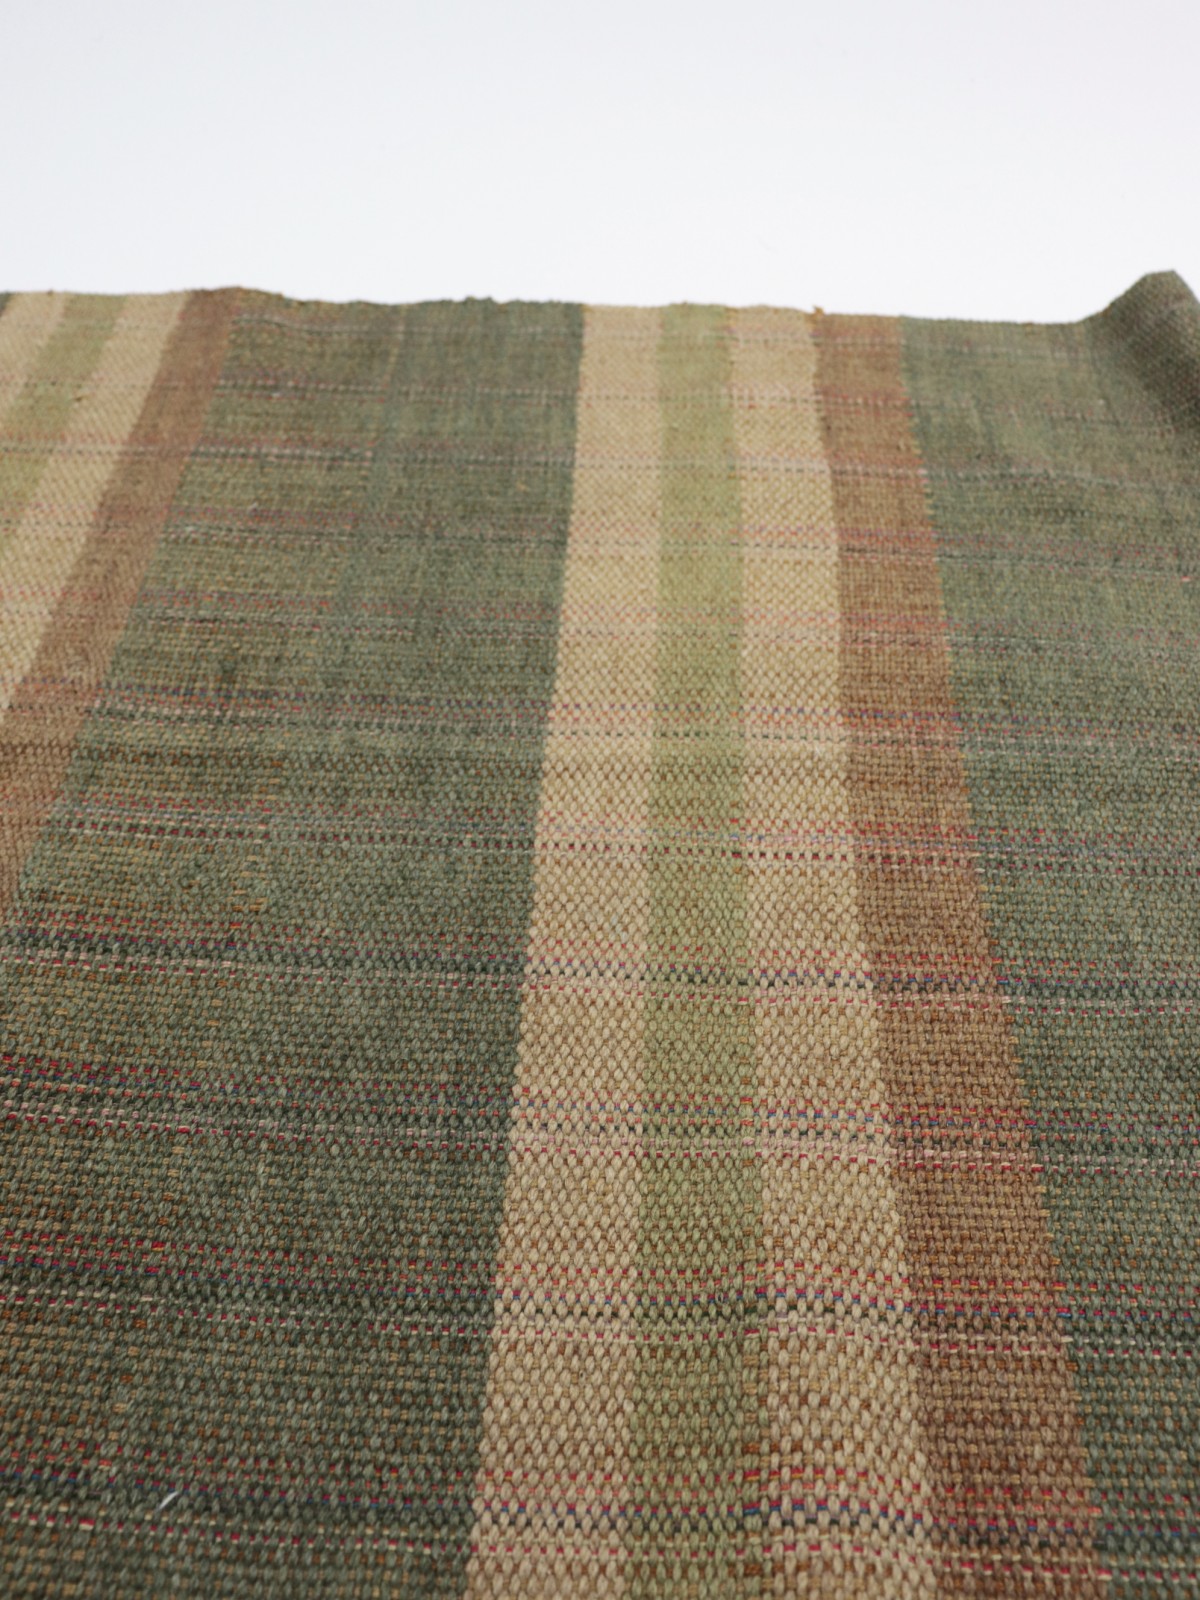 native american, rag rug, late1800's